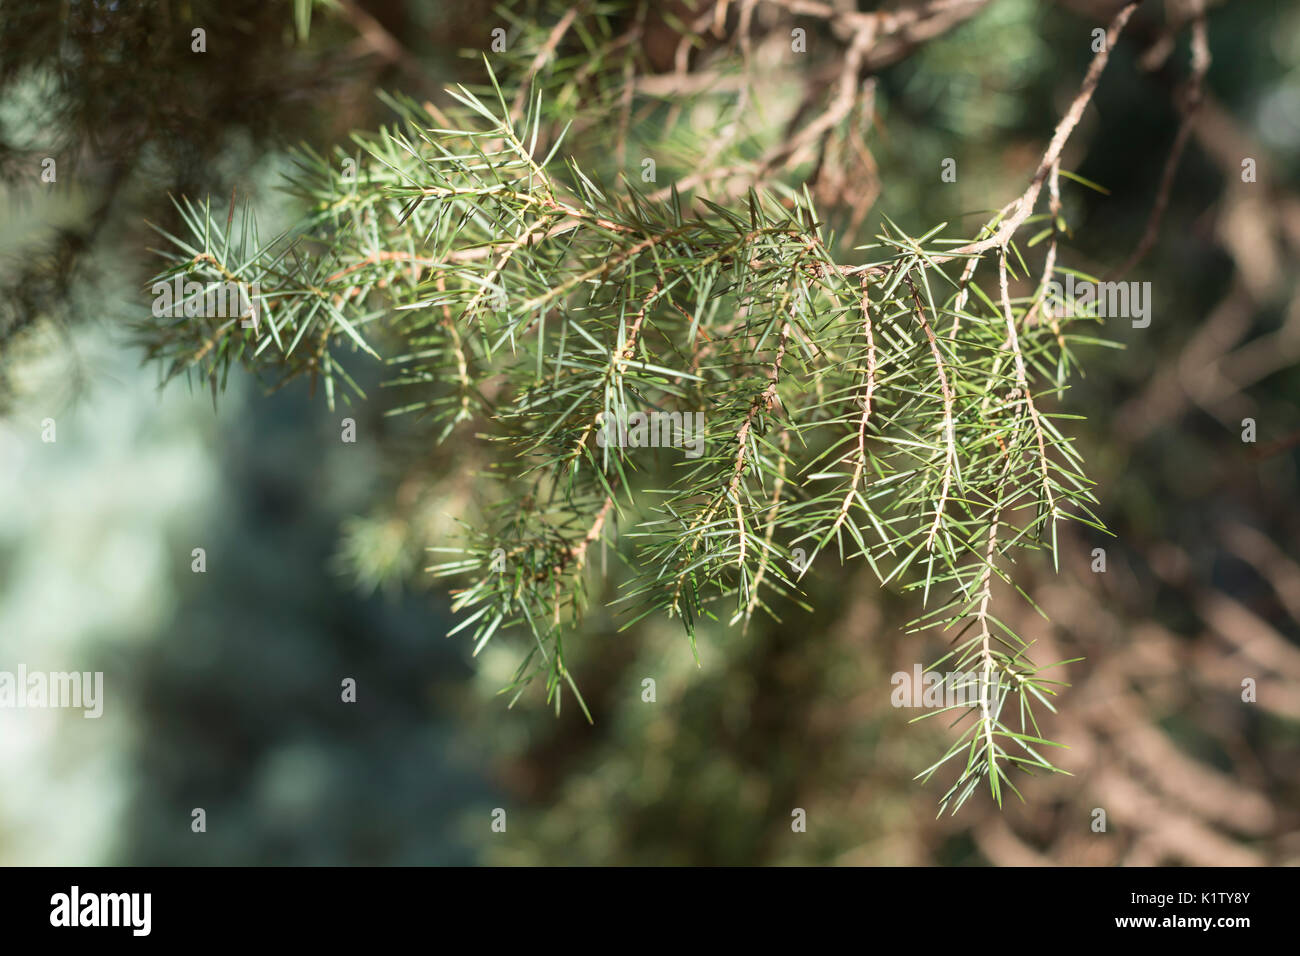 Common juniper branch, Juniperus communis. Family cupressaceae Stock Photo